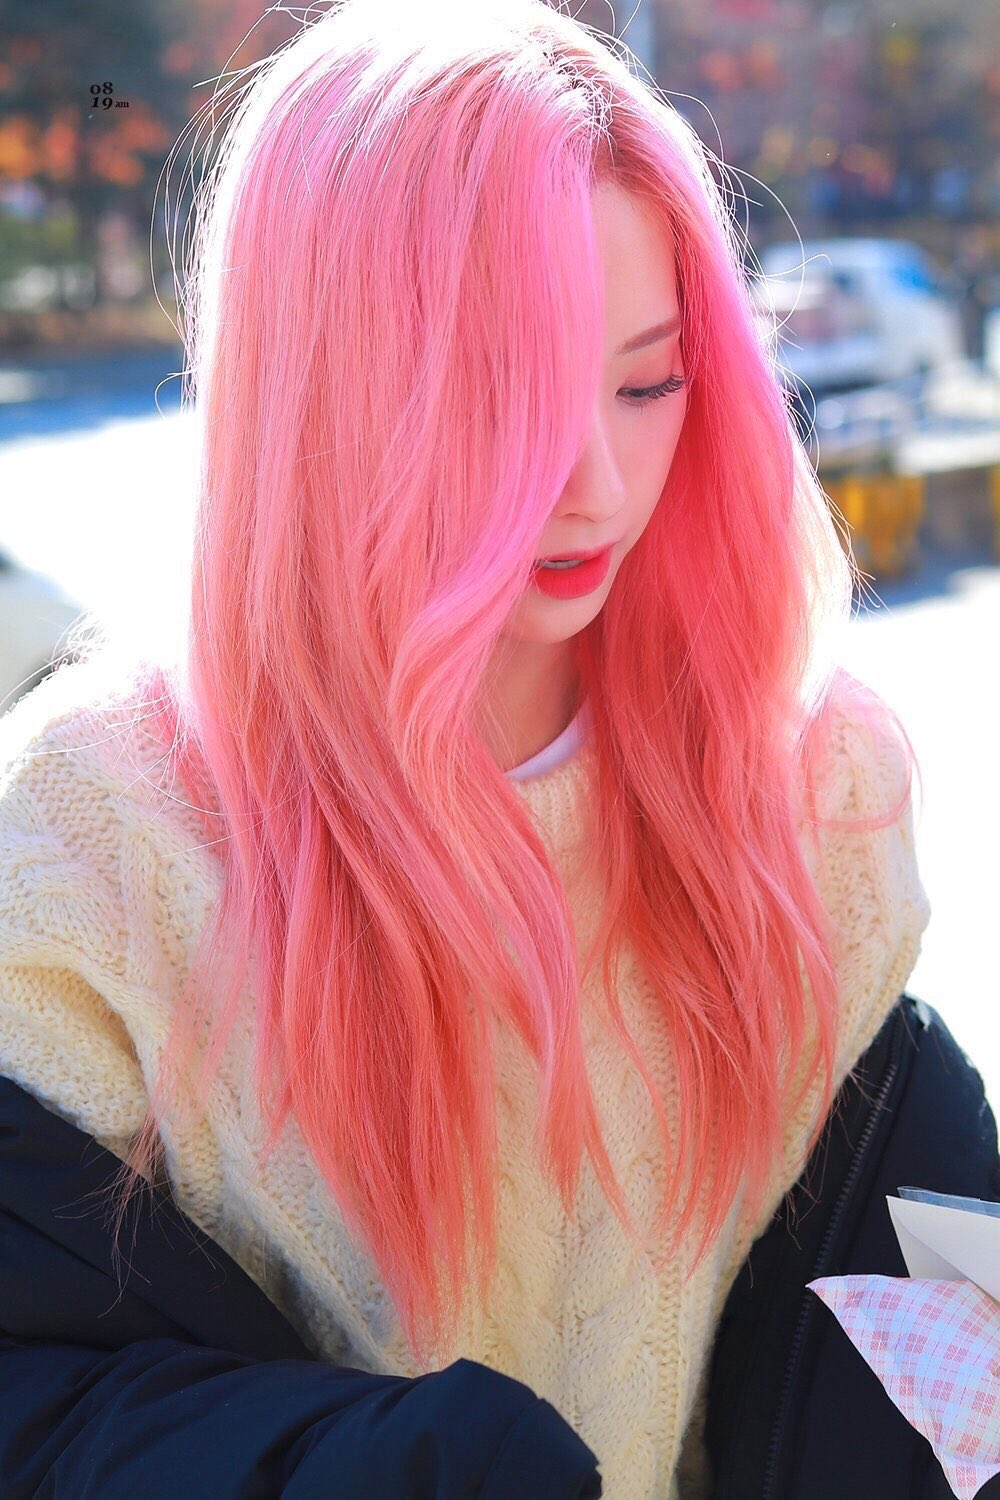 «Словно сладкая вата», девушки айдолы с волосами очаровательного розового оттенка